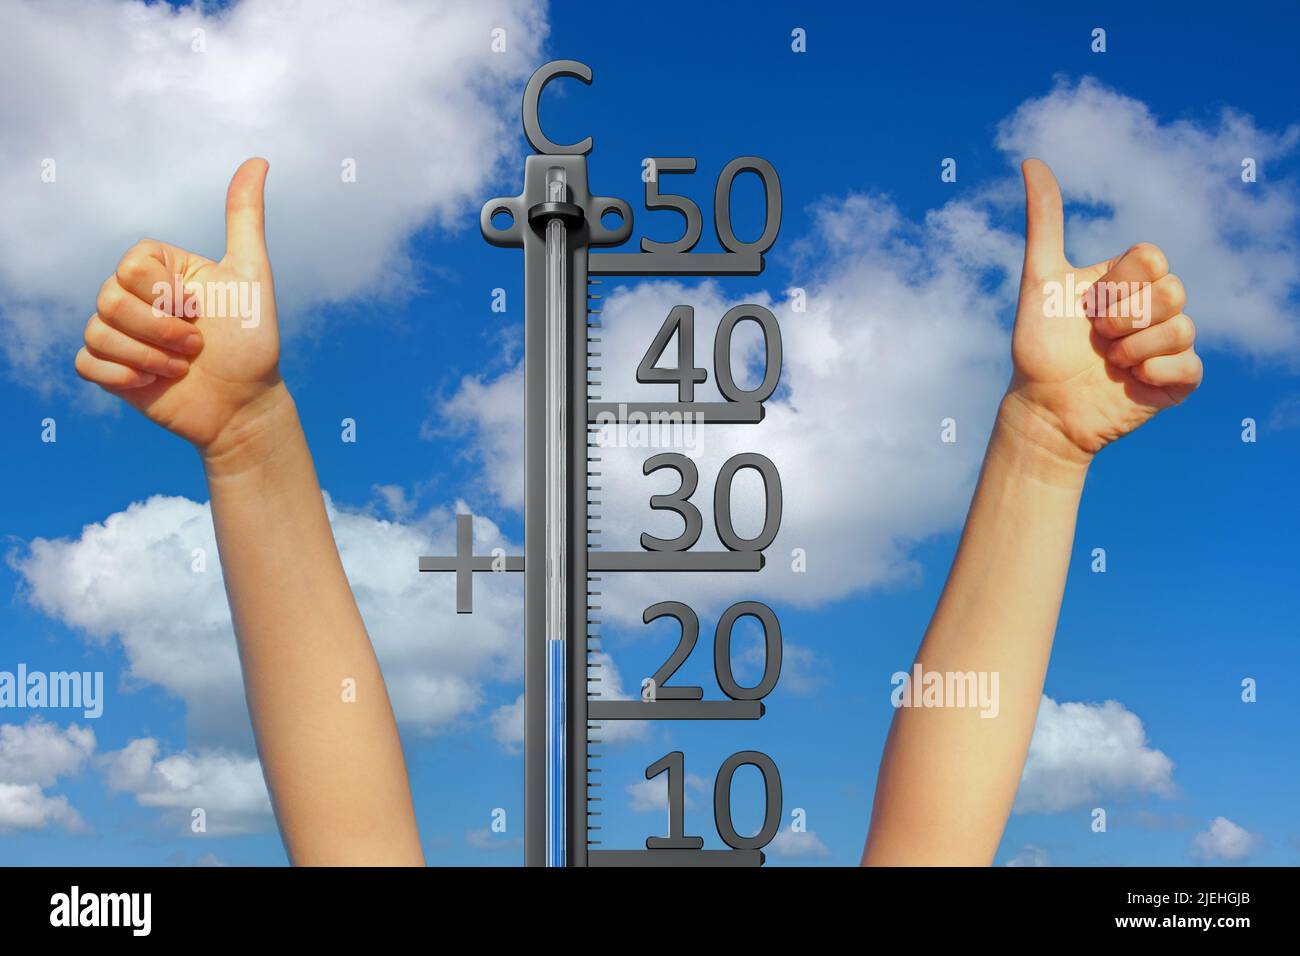 Endlich Sommer, Thermometer zeigt 25 Grad, zwei Hände strecken sich in den Himmel und zeigen den Daumen nach oben, Sommerferien, Urlaub, warm, Daumen Stock Photo